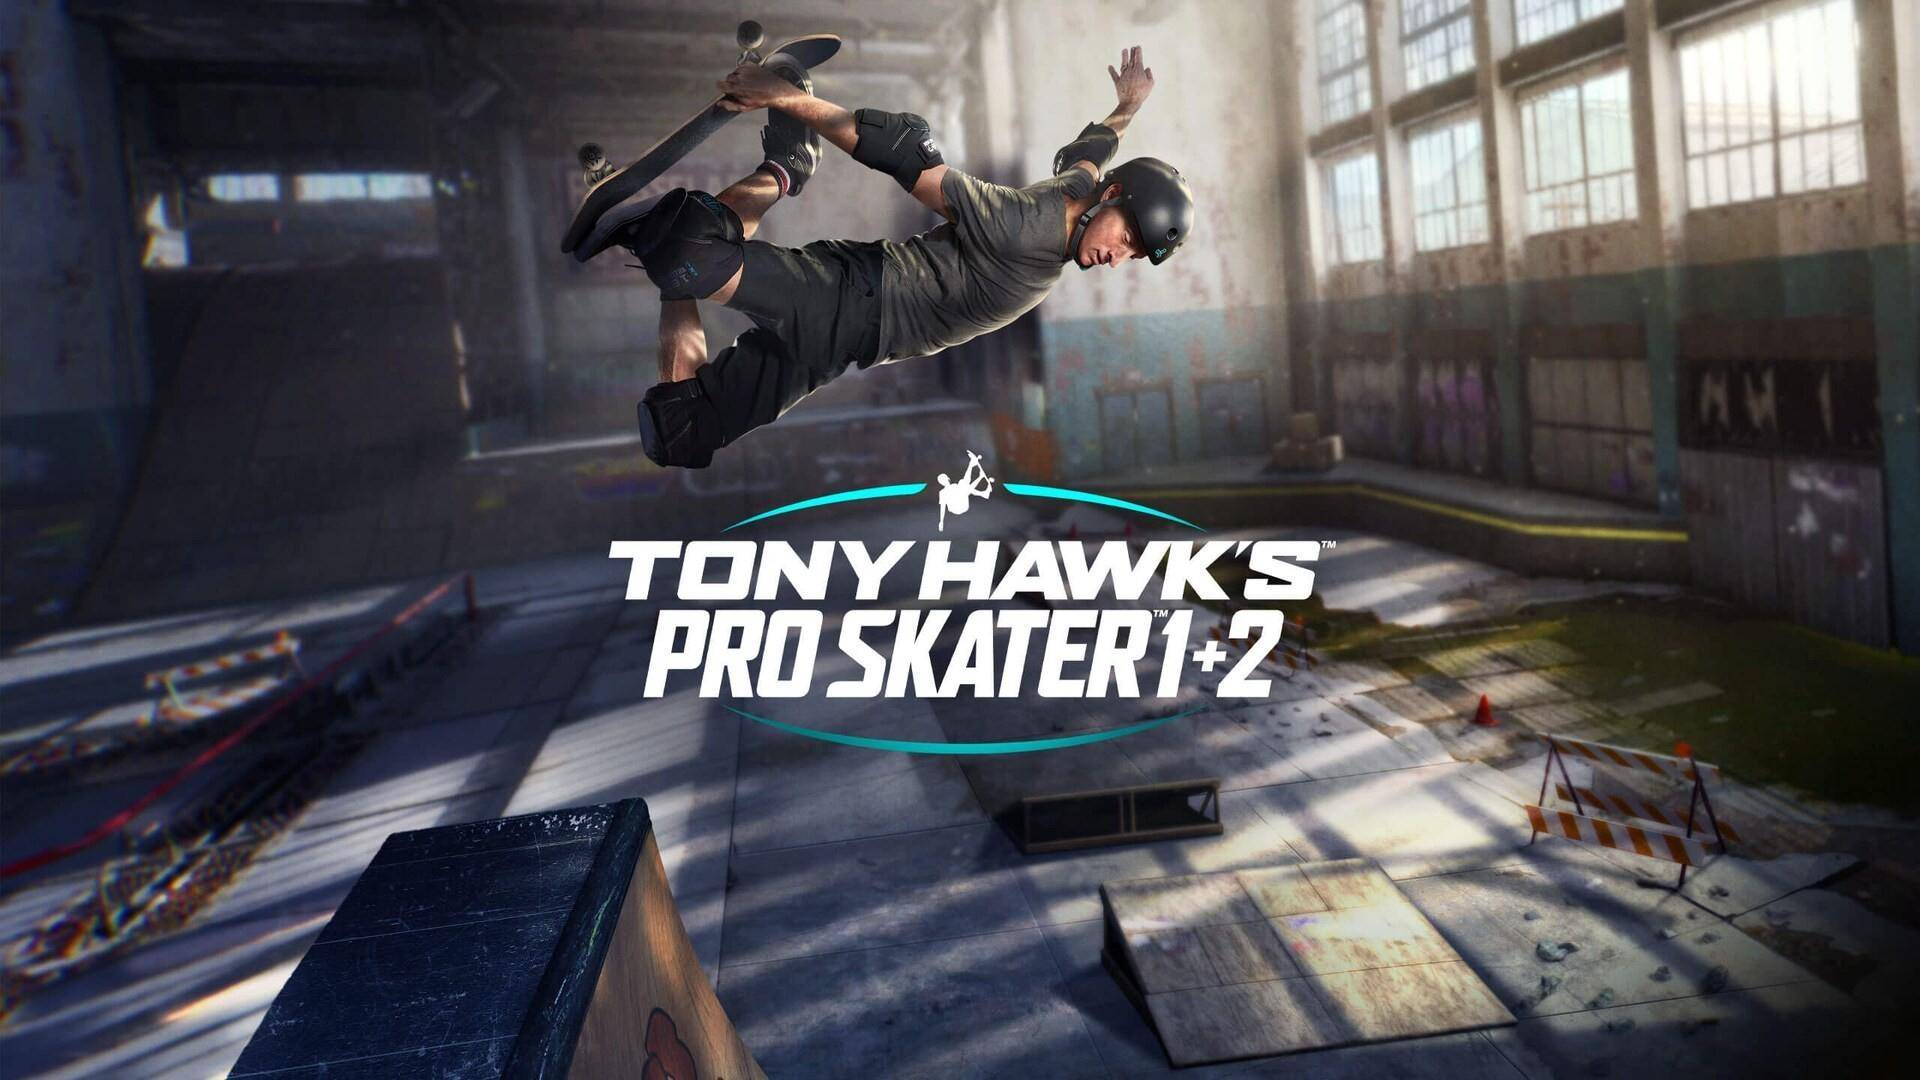 Er is een Tony Hawk's Pro Skater 1 + 2 gratis proefversie beschikbaar